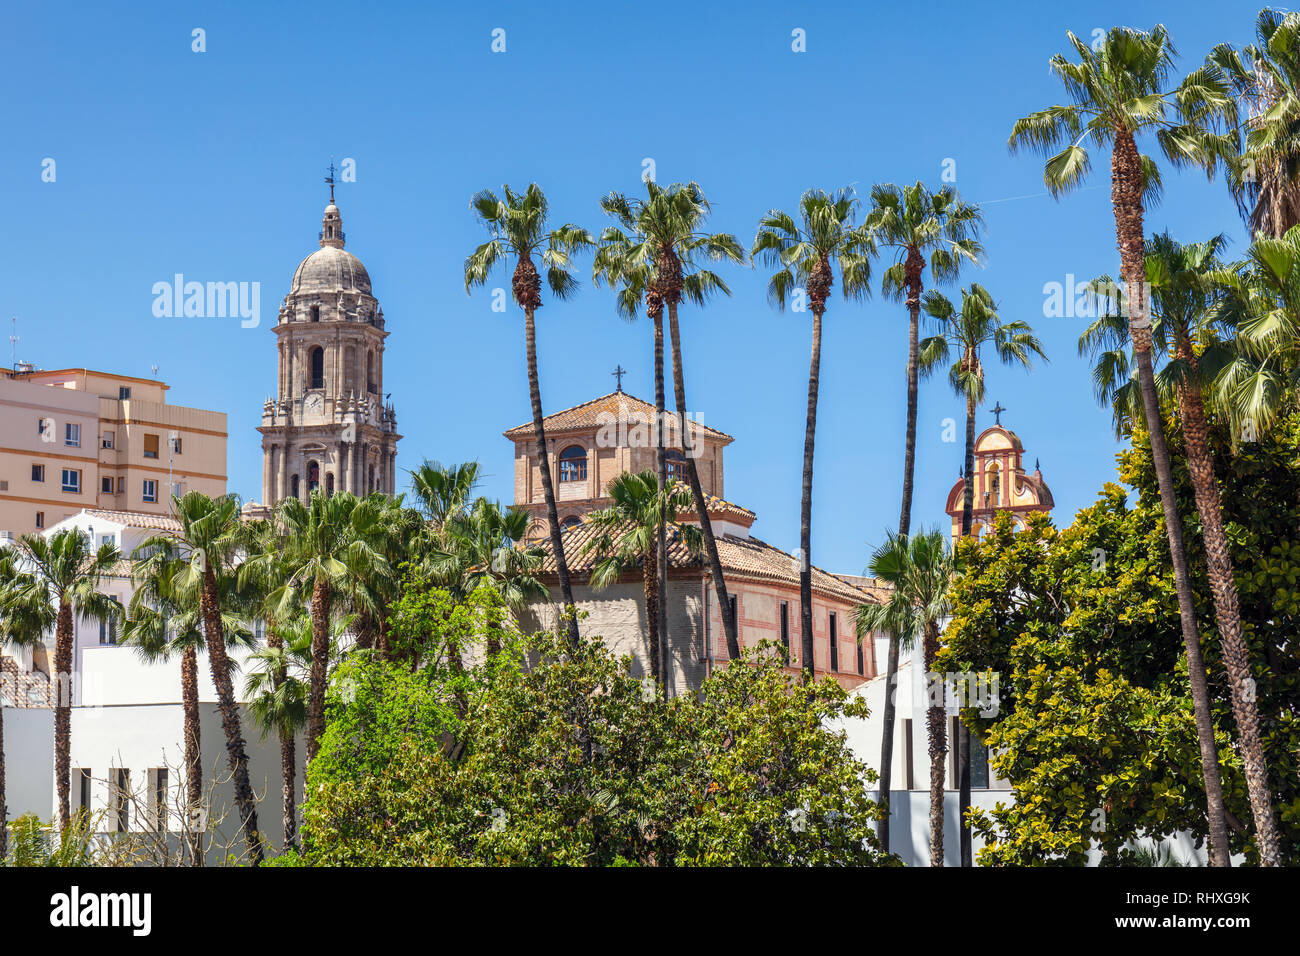 Malaga, Costa del Sol, Provinz Malaga, Andalusien, Südspanien. Ansicht der Altstadt Malagas von der Calle Alcazabilla. Turm der Kathedrale auf der rechten, San Agustin c Stockfoto